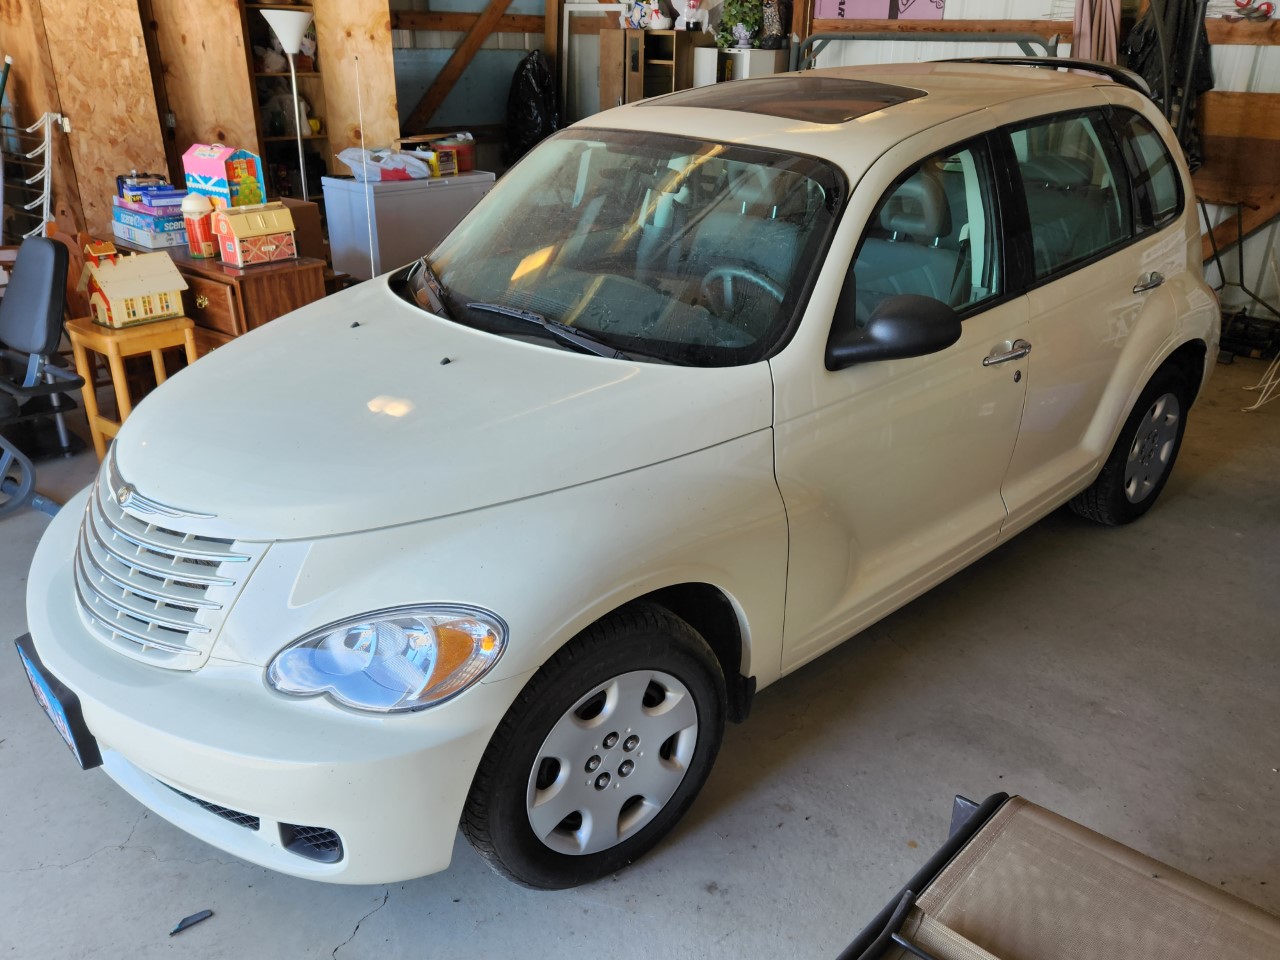 Item: 2007 Chrysler PT